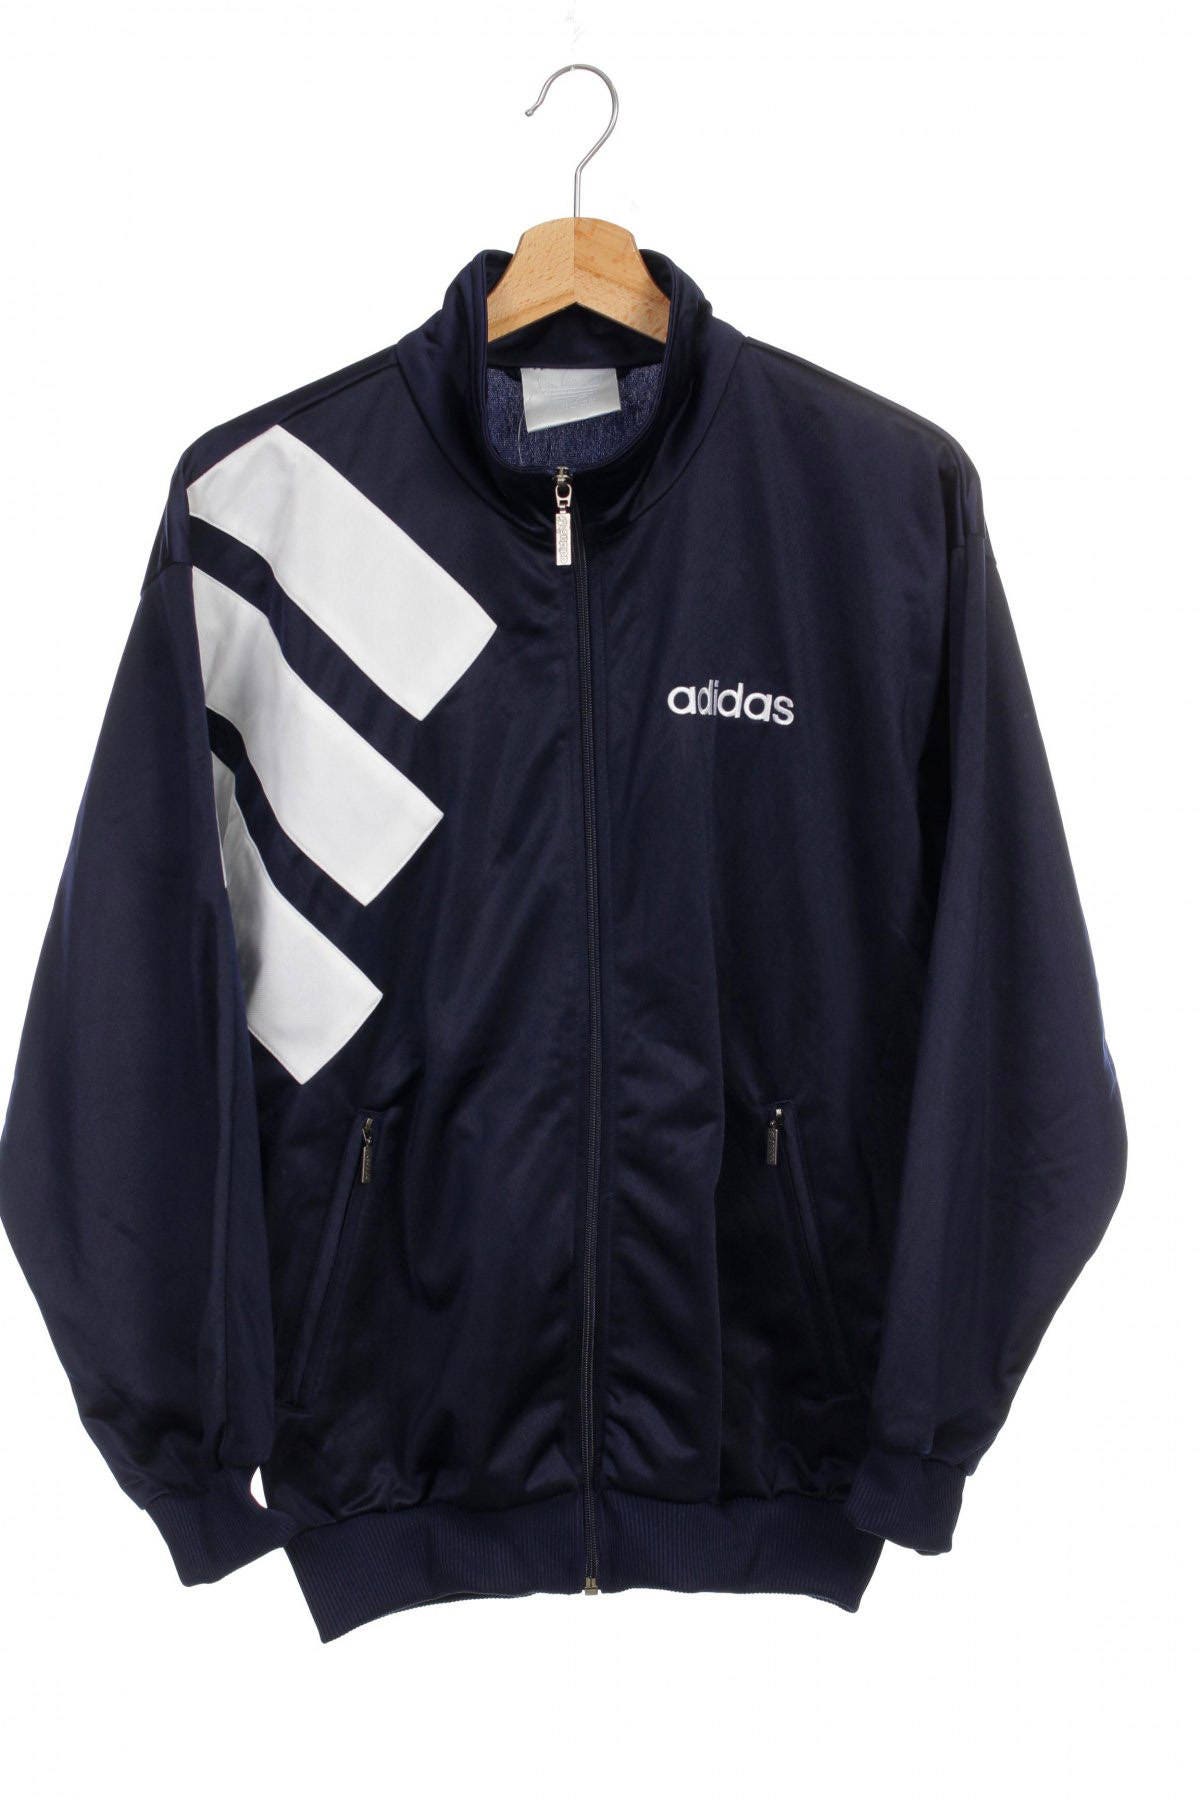 Adidas track. Adidas Jacket 90s. Adidas Jacket 90. Adidas Vintage track Jacket Mens. Куртка adidas Trek.